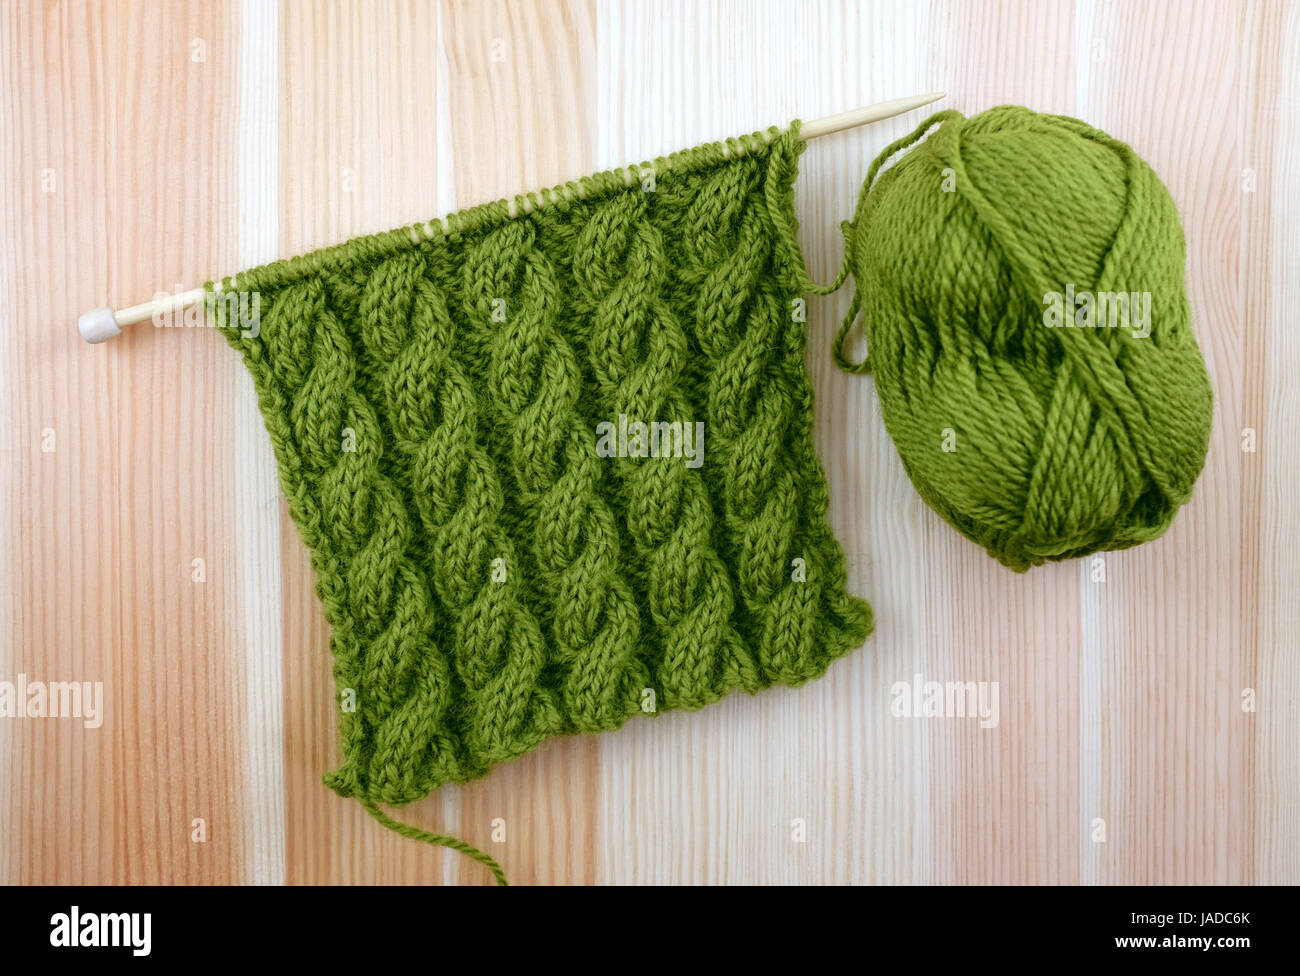 Reiche grüne gewickelte Seil Kabel Masche stricken mit einem Ball aus Wolle  auf woodgrain Stockfotografie - Alamy